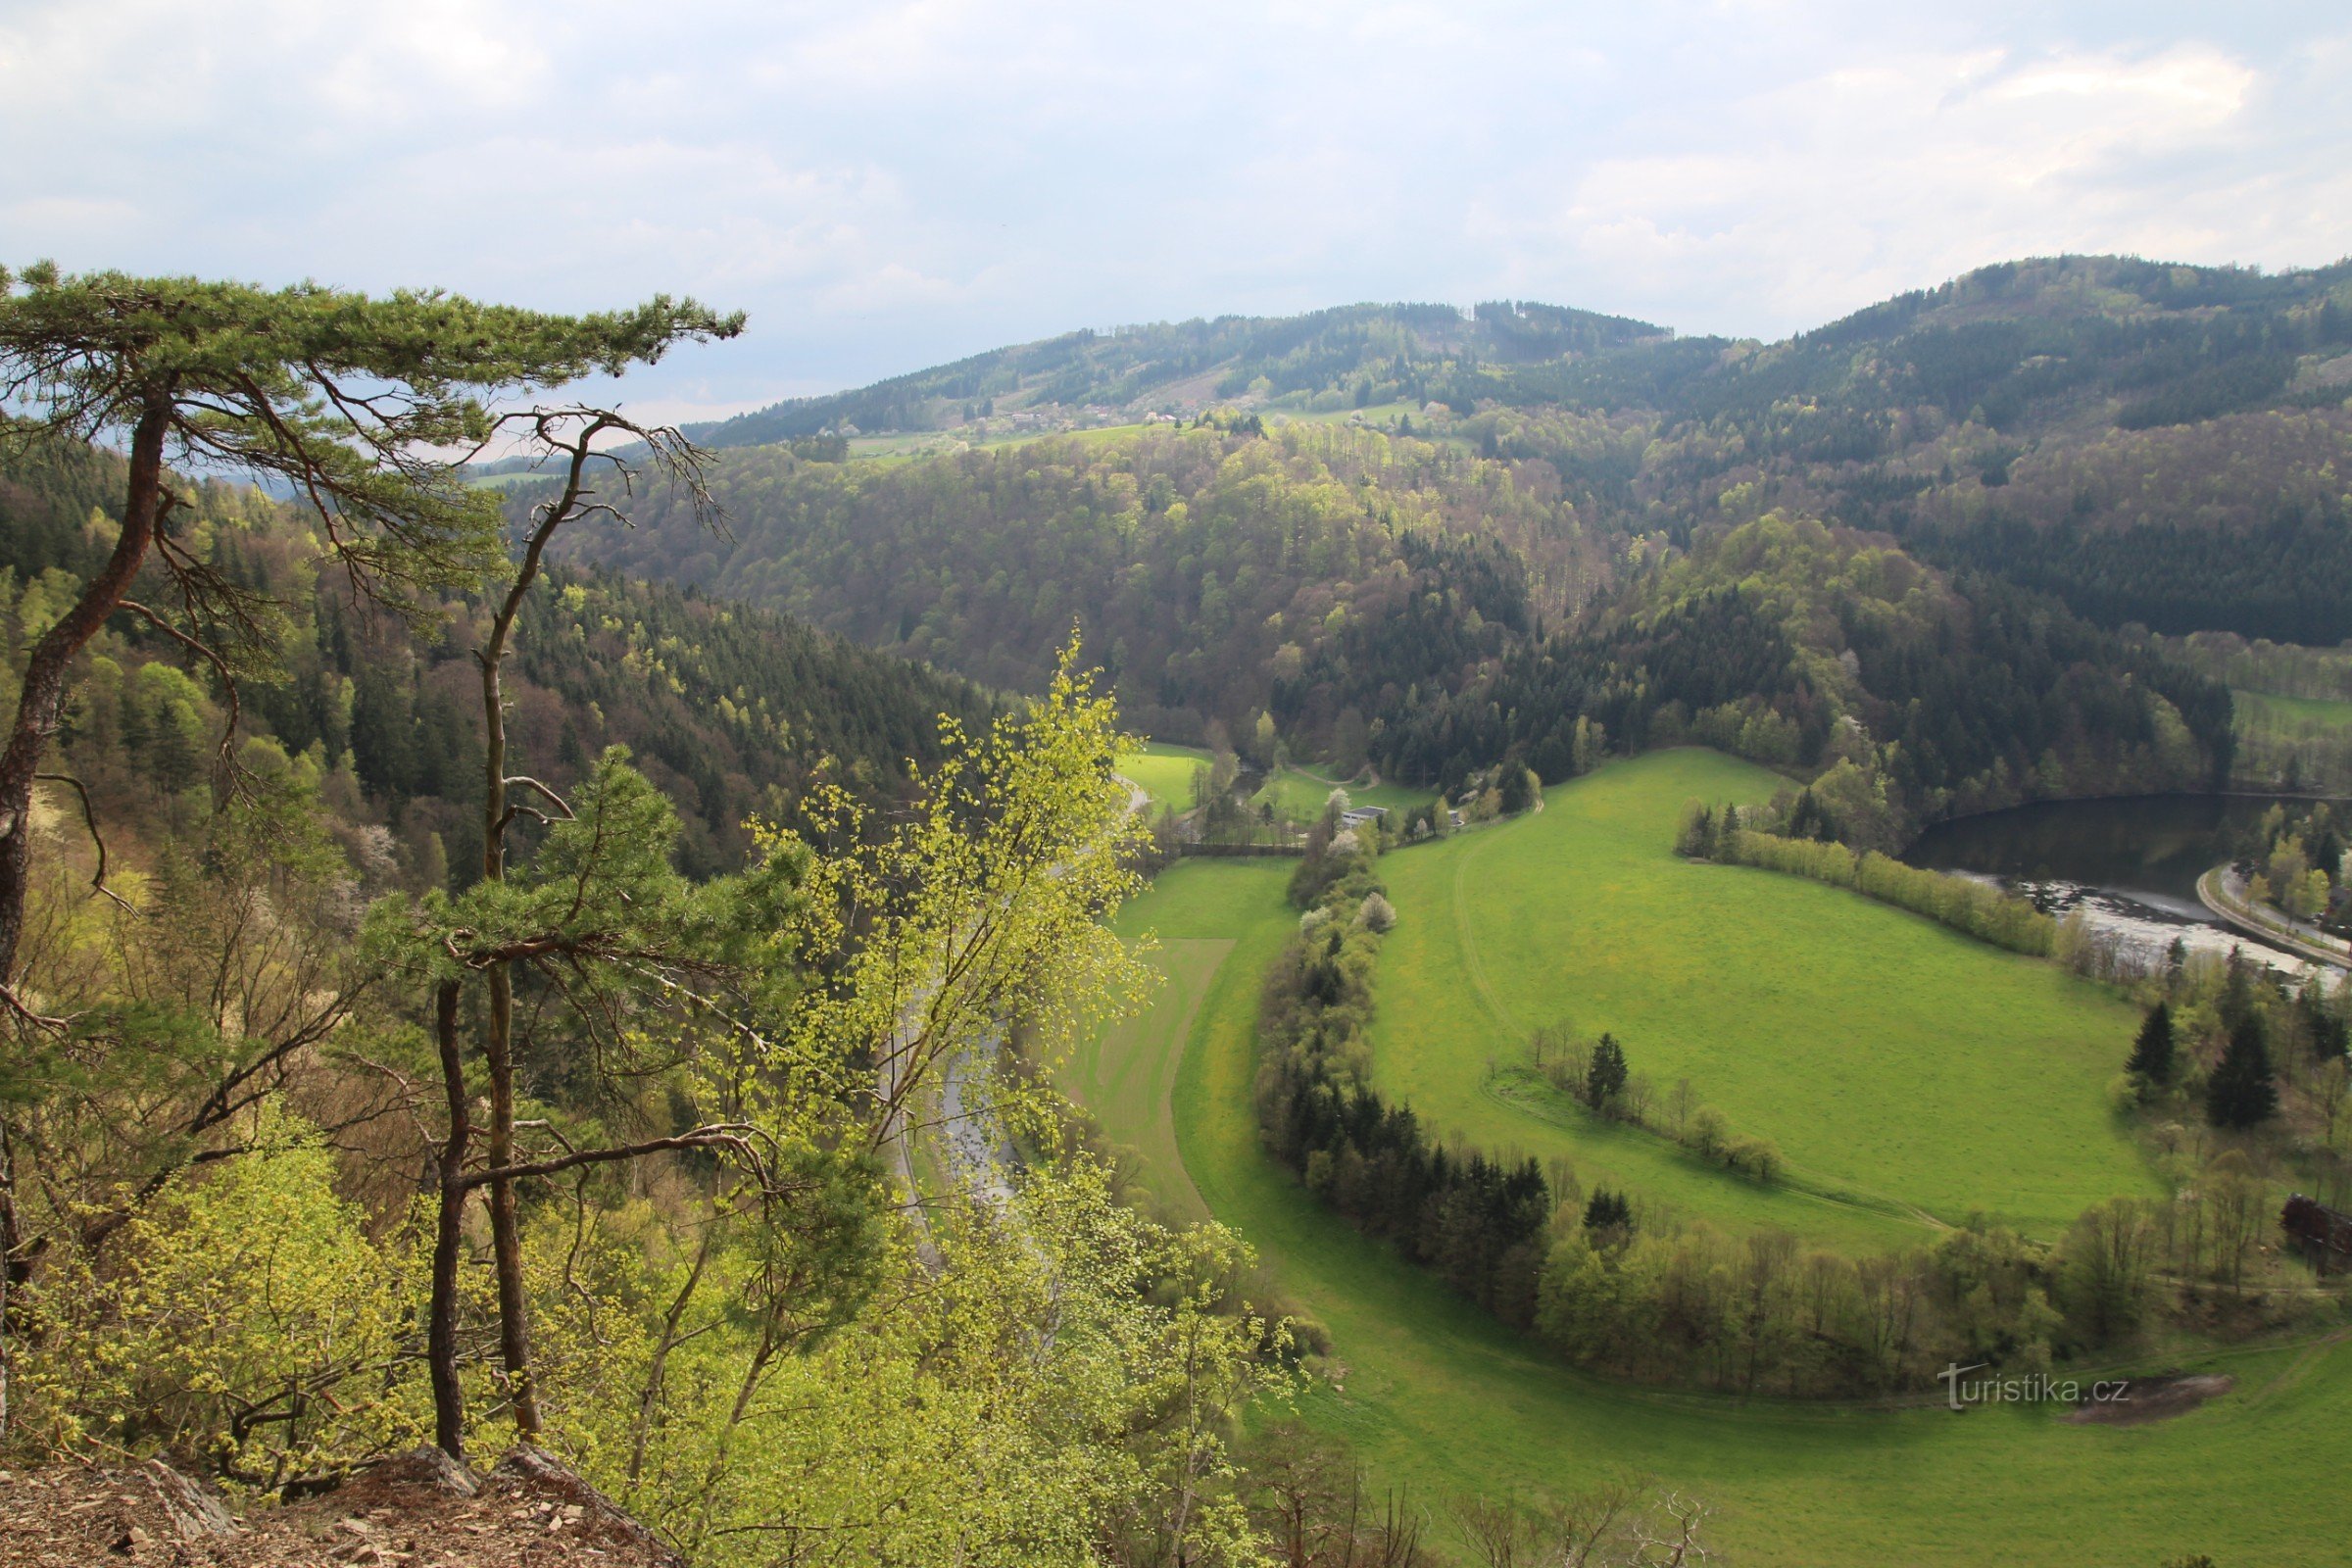 Pogled na dno doline, nad njo na obzorju na vrhu gozdnatega grebena je grad Zubštejn